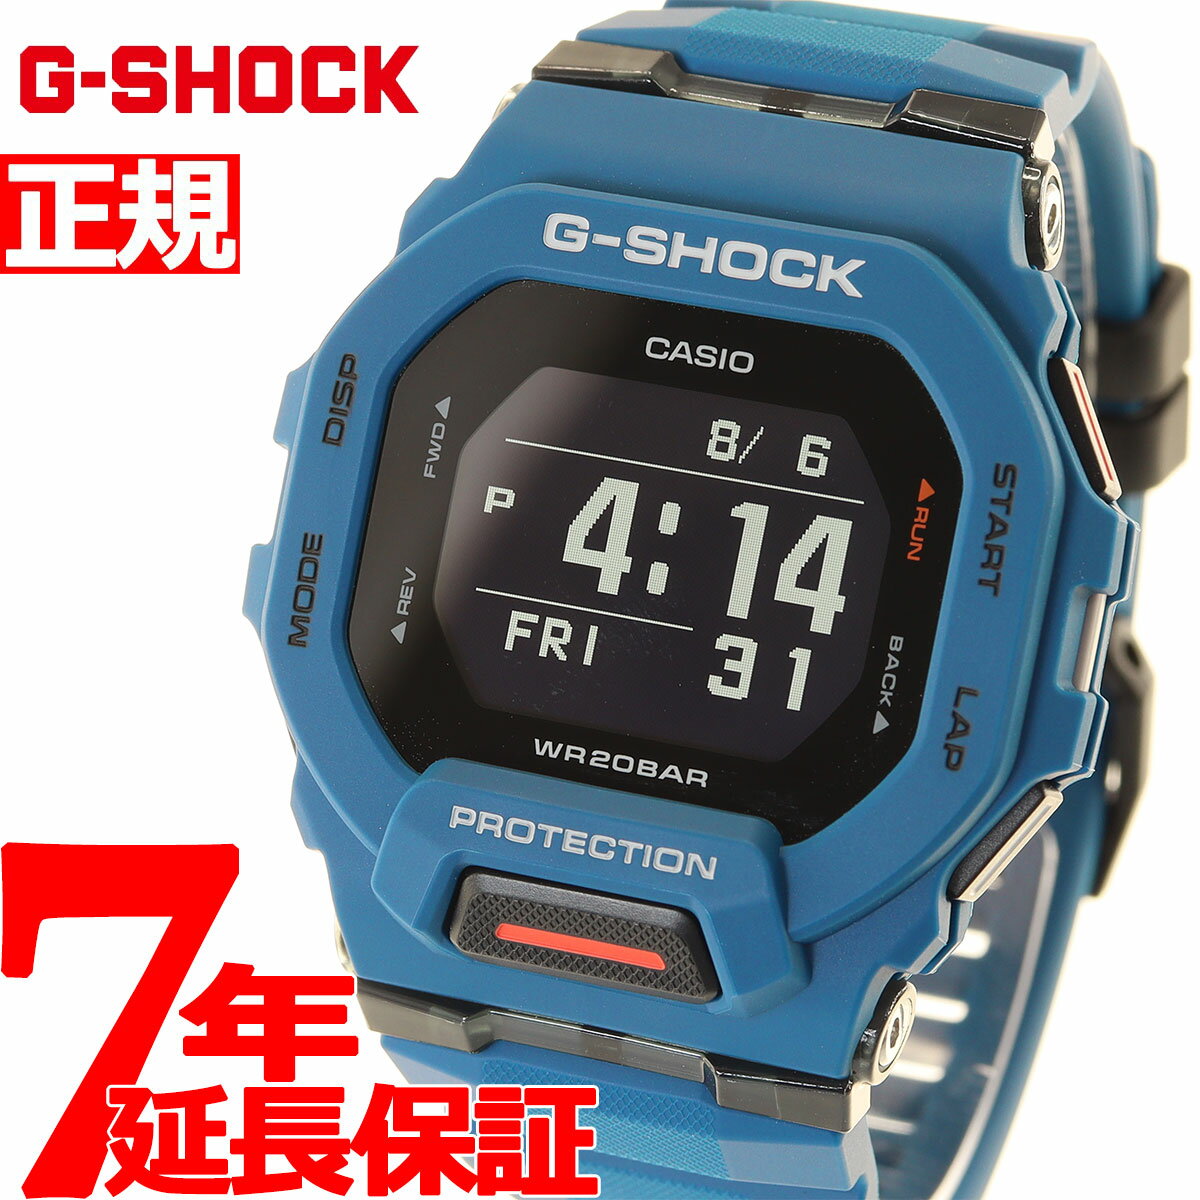 腕時計, メンズ腕時計 2000OFF5652320:005271:59G-SH OCK G G-SQUAD GBD-200 GBD-200-2JF Bluetooth CASIO 2021 